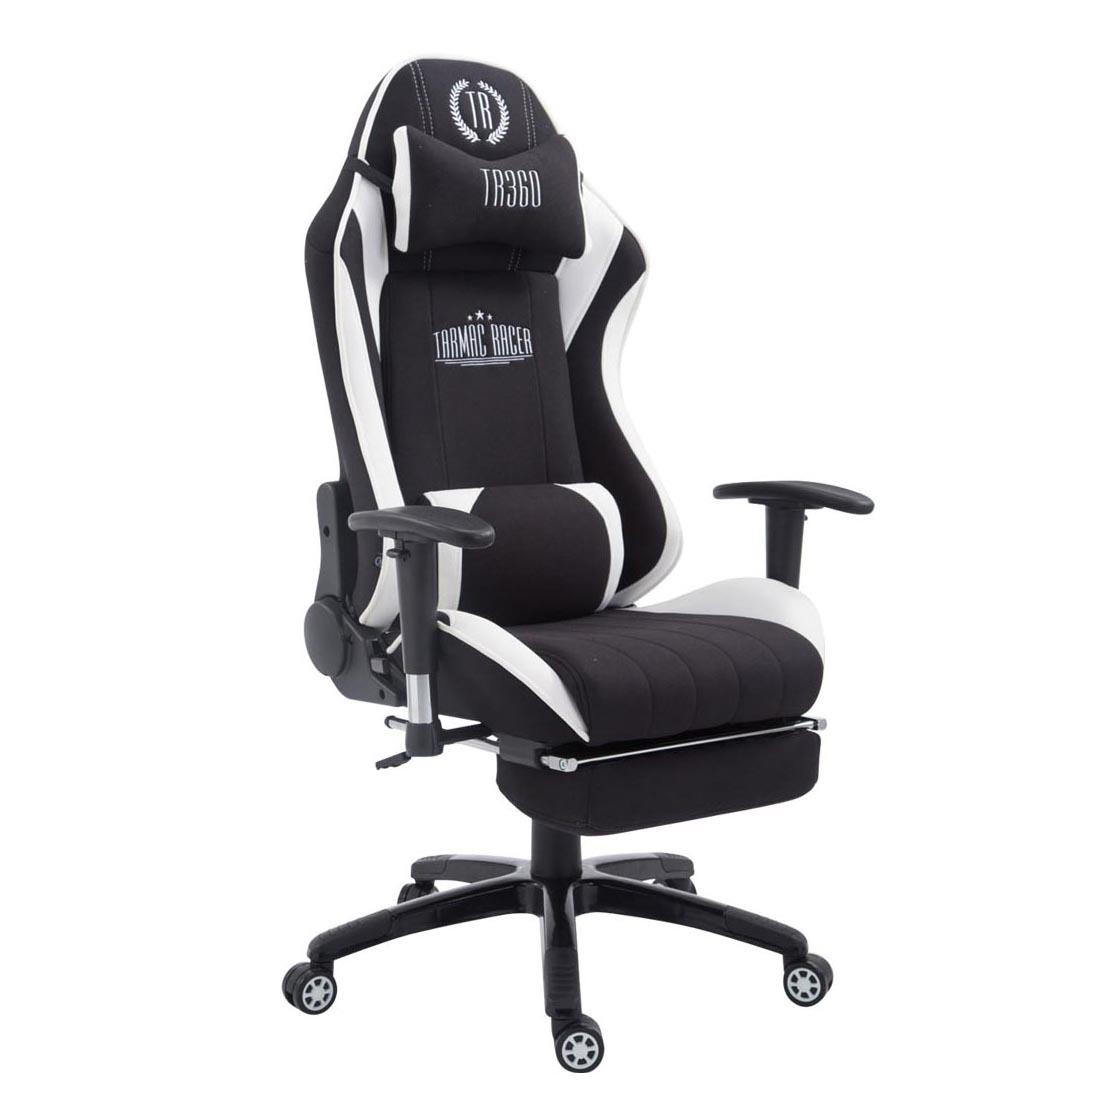 Gaming-Stuhl TURBO STOFF mit Fußablage, neigbare Rückenlehne, Nacken- und Lordosekissen, Farbe Schwarz / Weiß